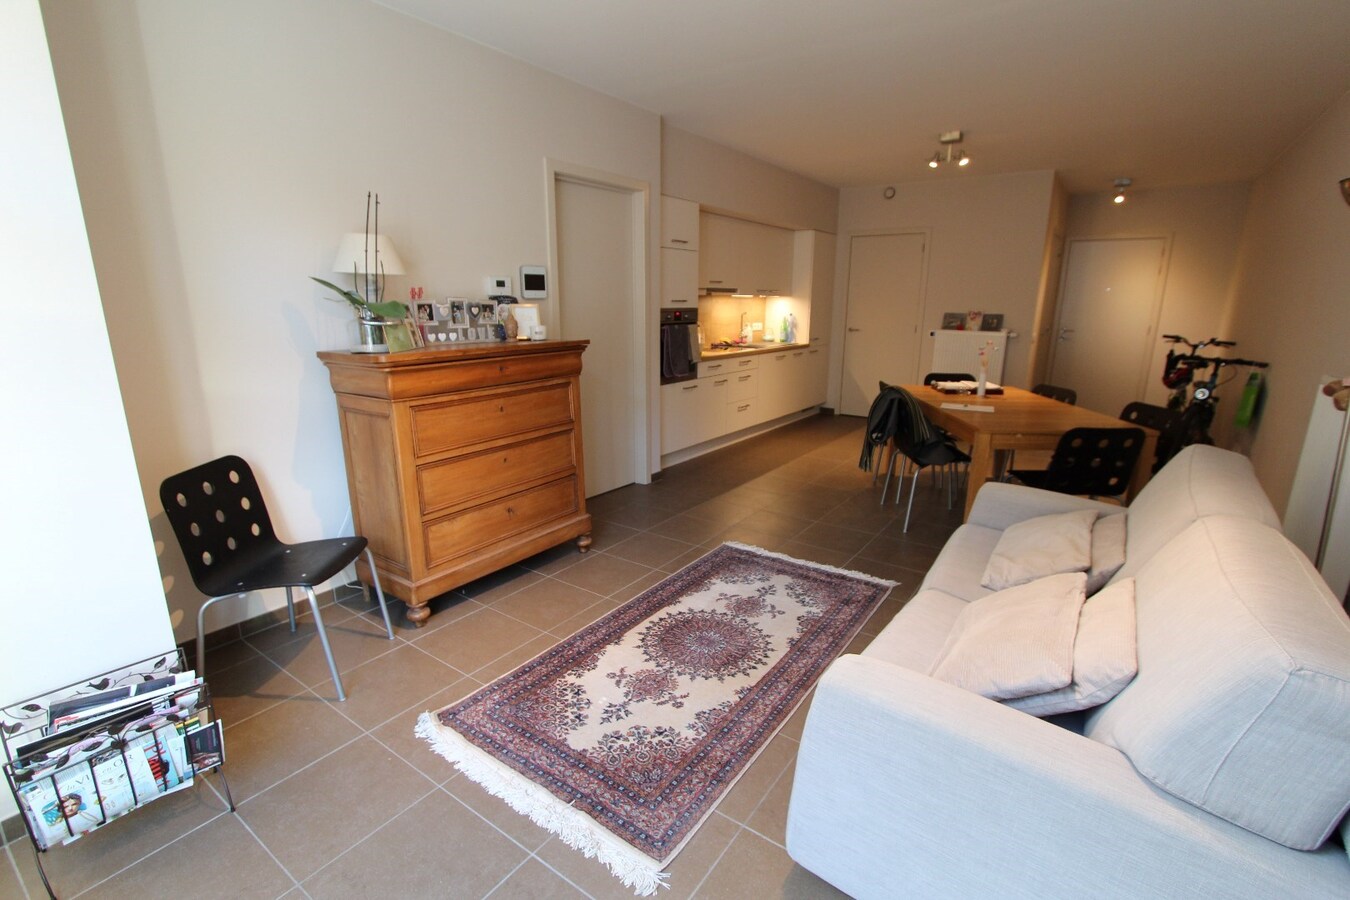 Appartement met 1 slaapkamer in het centrum van Roeselare 